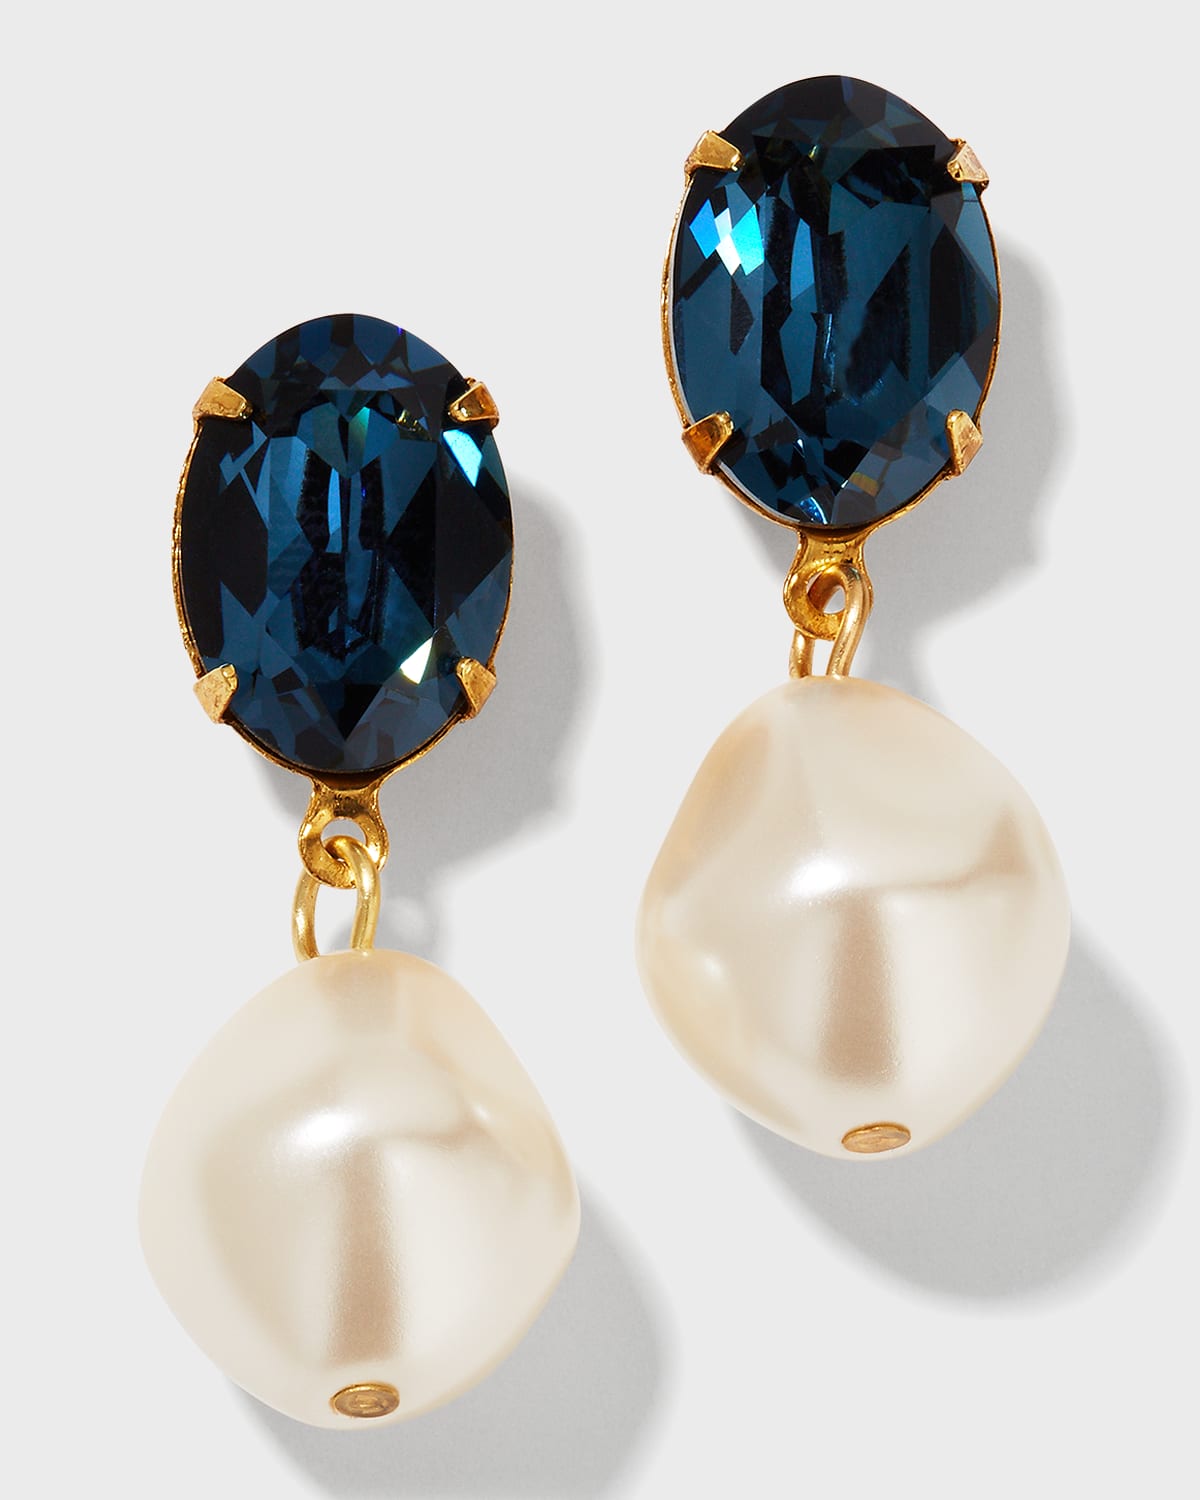 Blue Enamel Convertible Earrings Gold Tear Drop Earrings Pierced Baby Blue Enamel Earrings